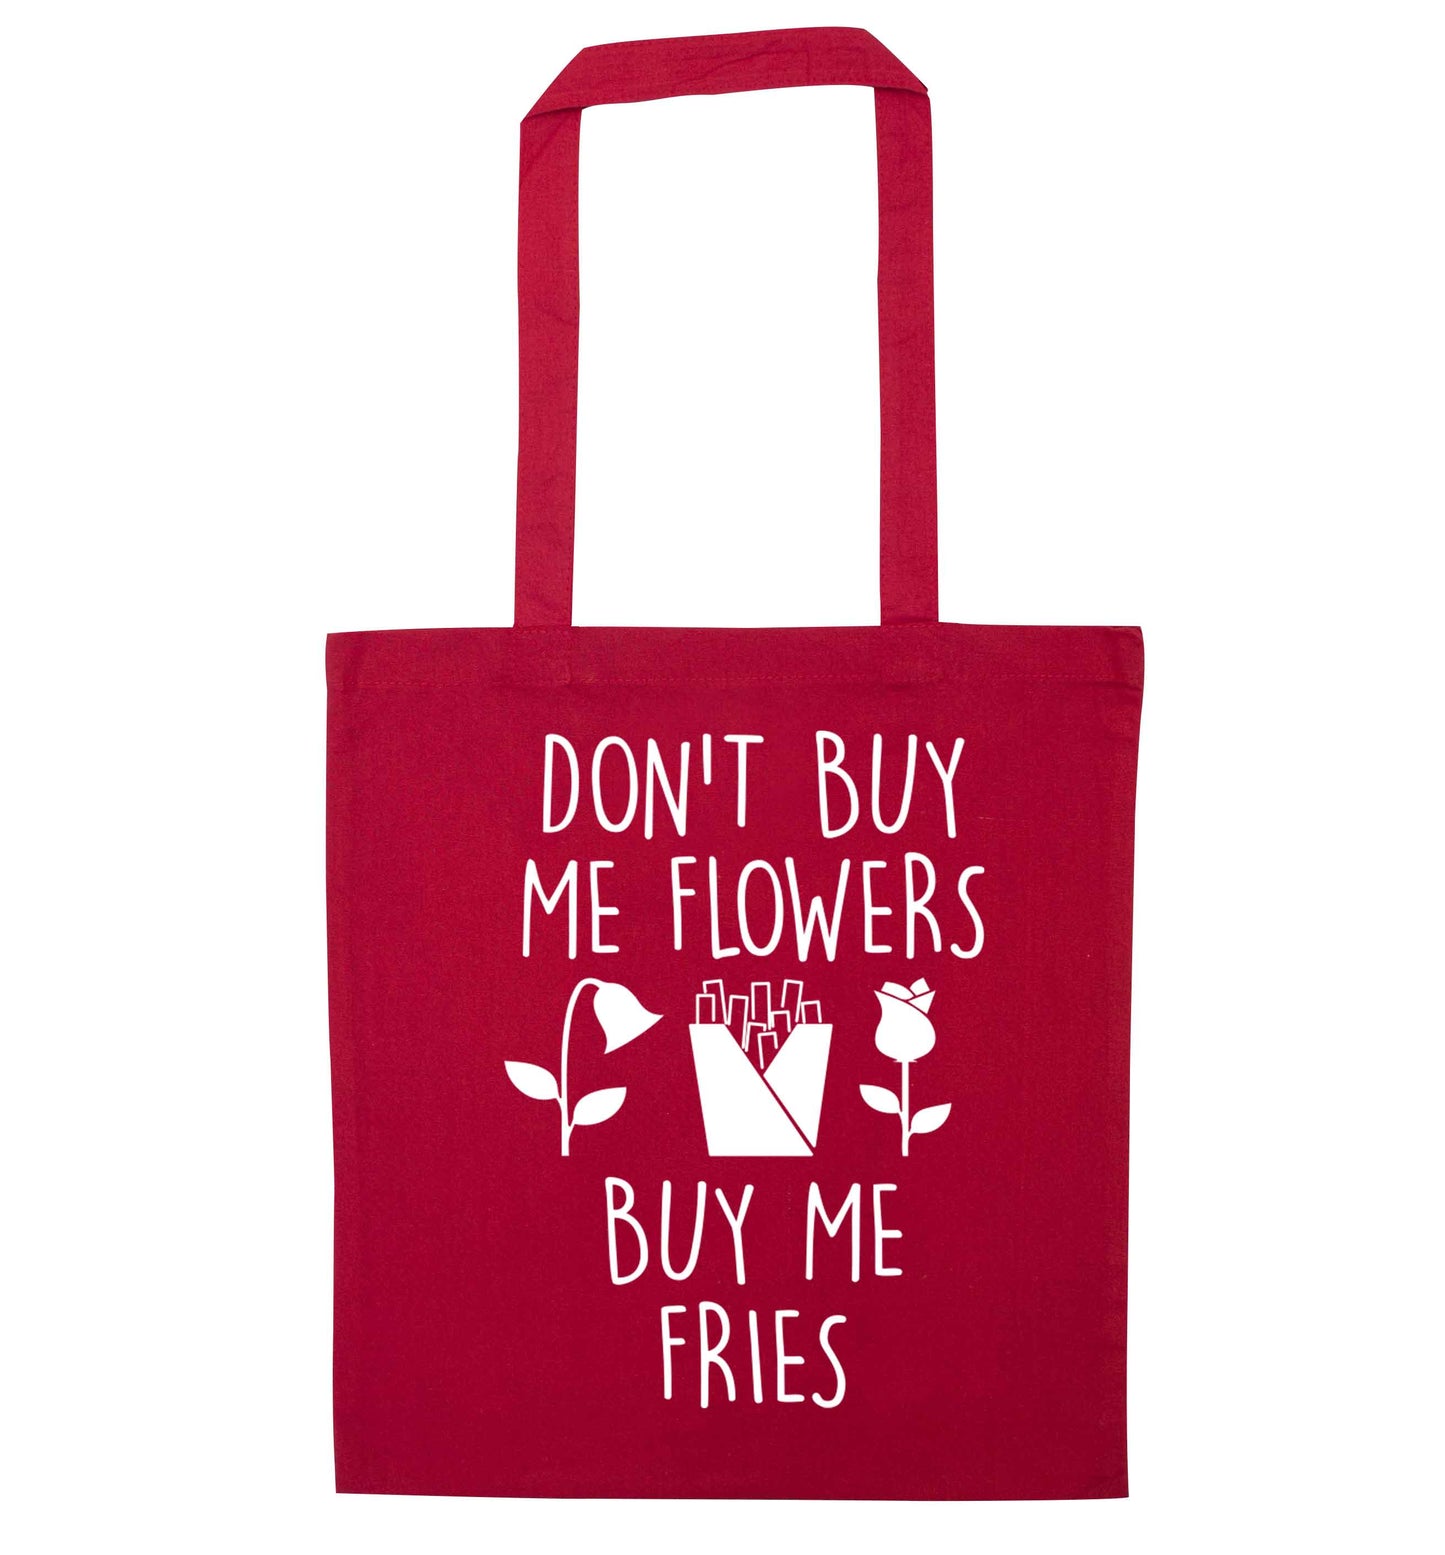 Don't buy me flowers buy me fries red tote bag